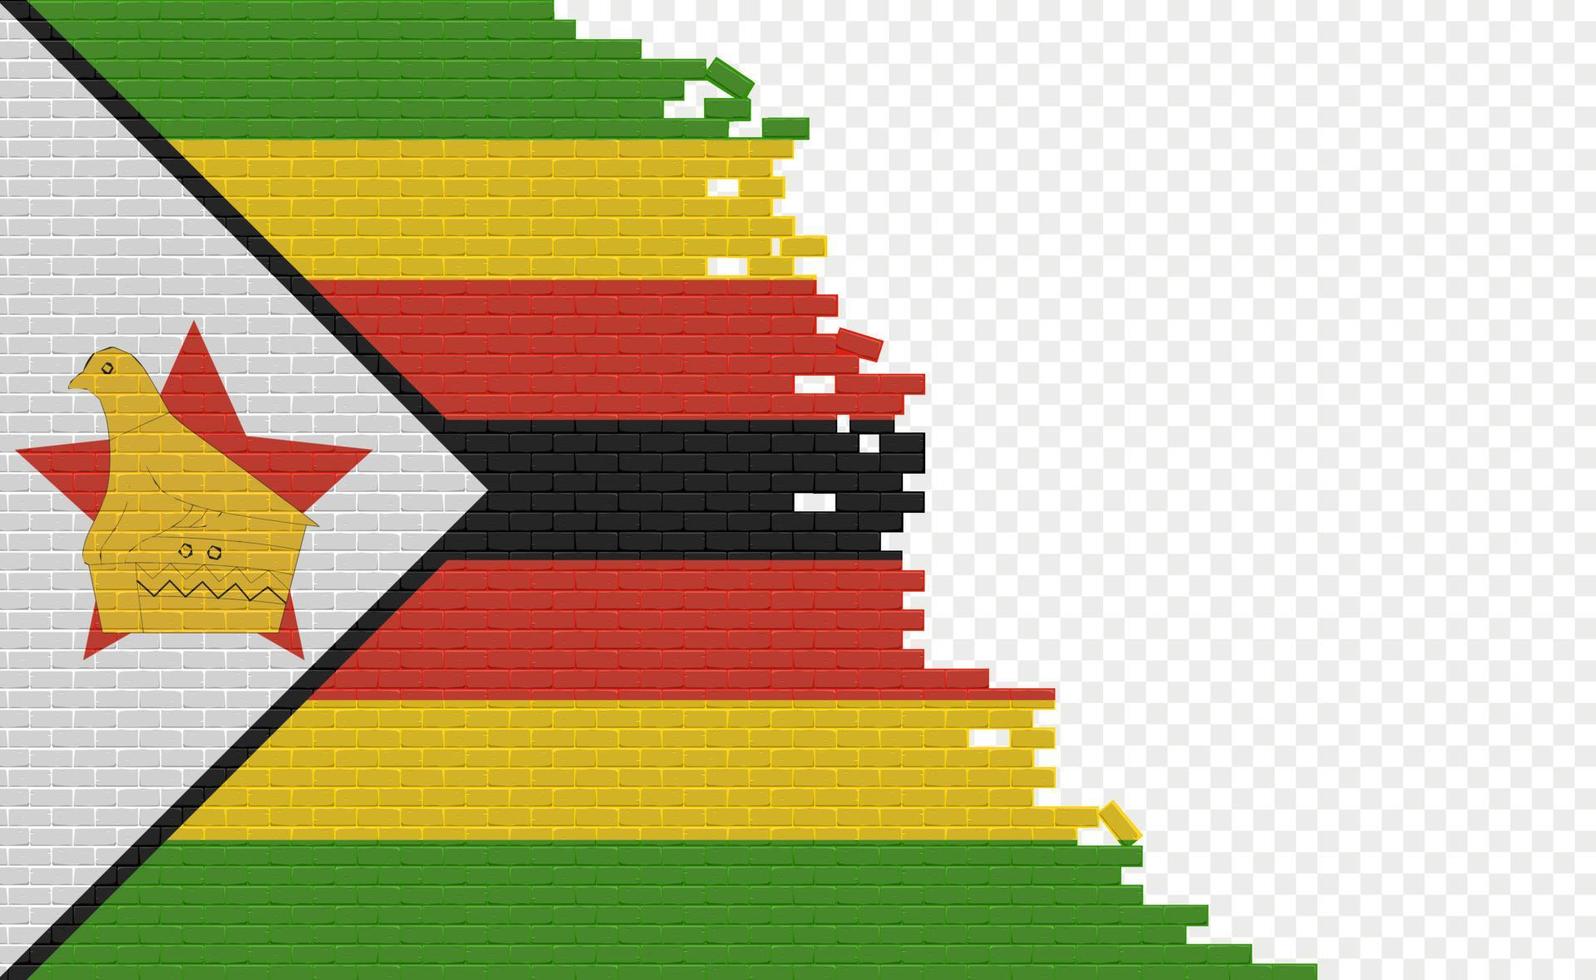 drapeau du zimbabwe sur le mur de briques cassées. champ de drapeau vide d'un autre pays. comparaison de pays. édition facile et vecteur en groupes.